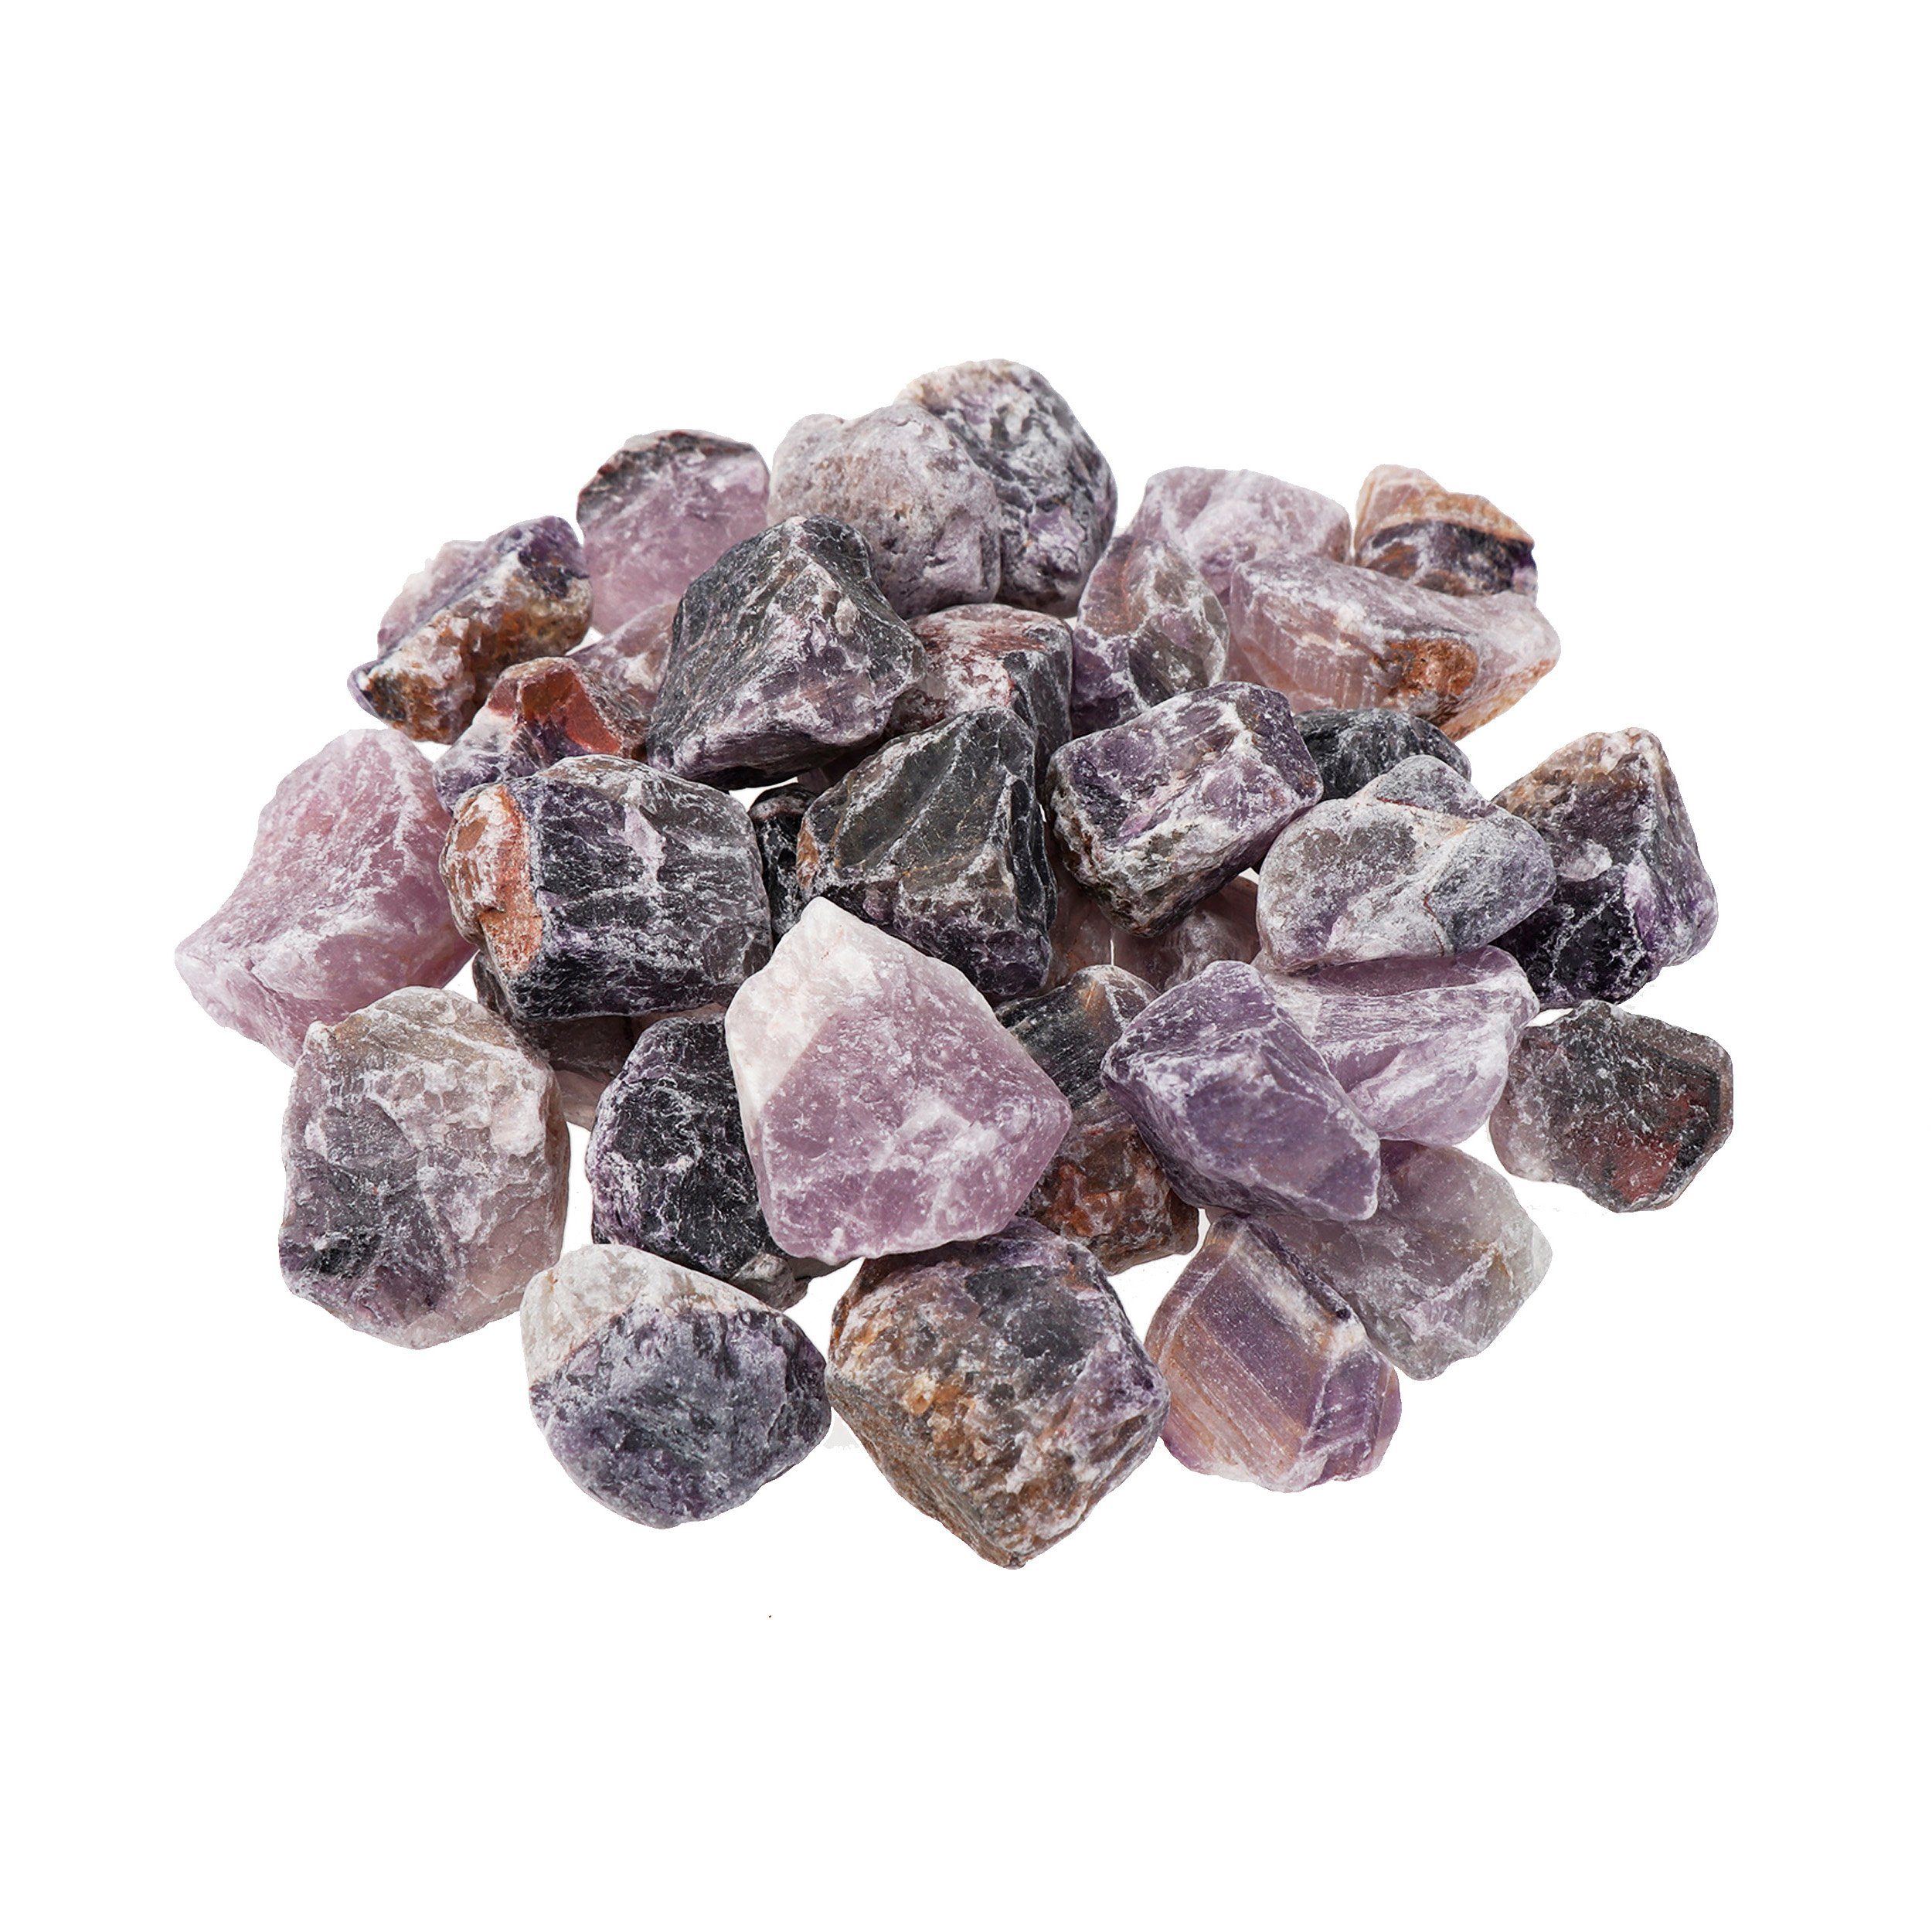 NKlaus Mineralstein 100g Wassersteine Wassersteine Mineralst, Amethyst Energievolle Edelsteine Rohsteine